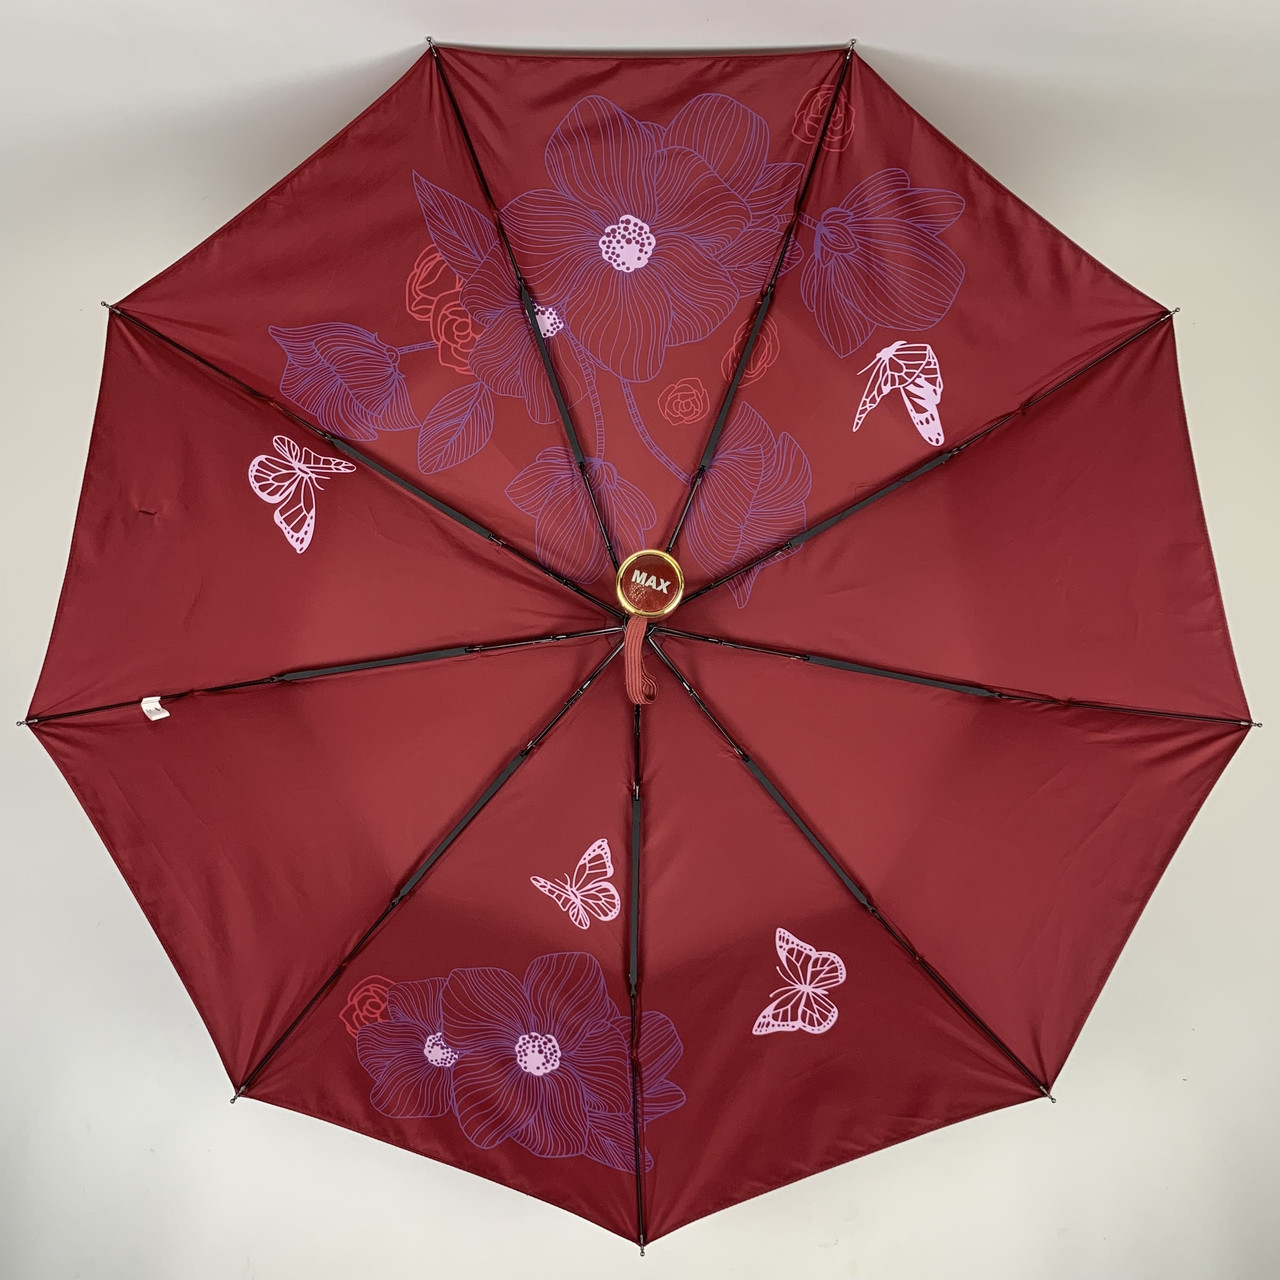 Женский складной зонтик полуавтомат Max 102 см бордовый - фото 7